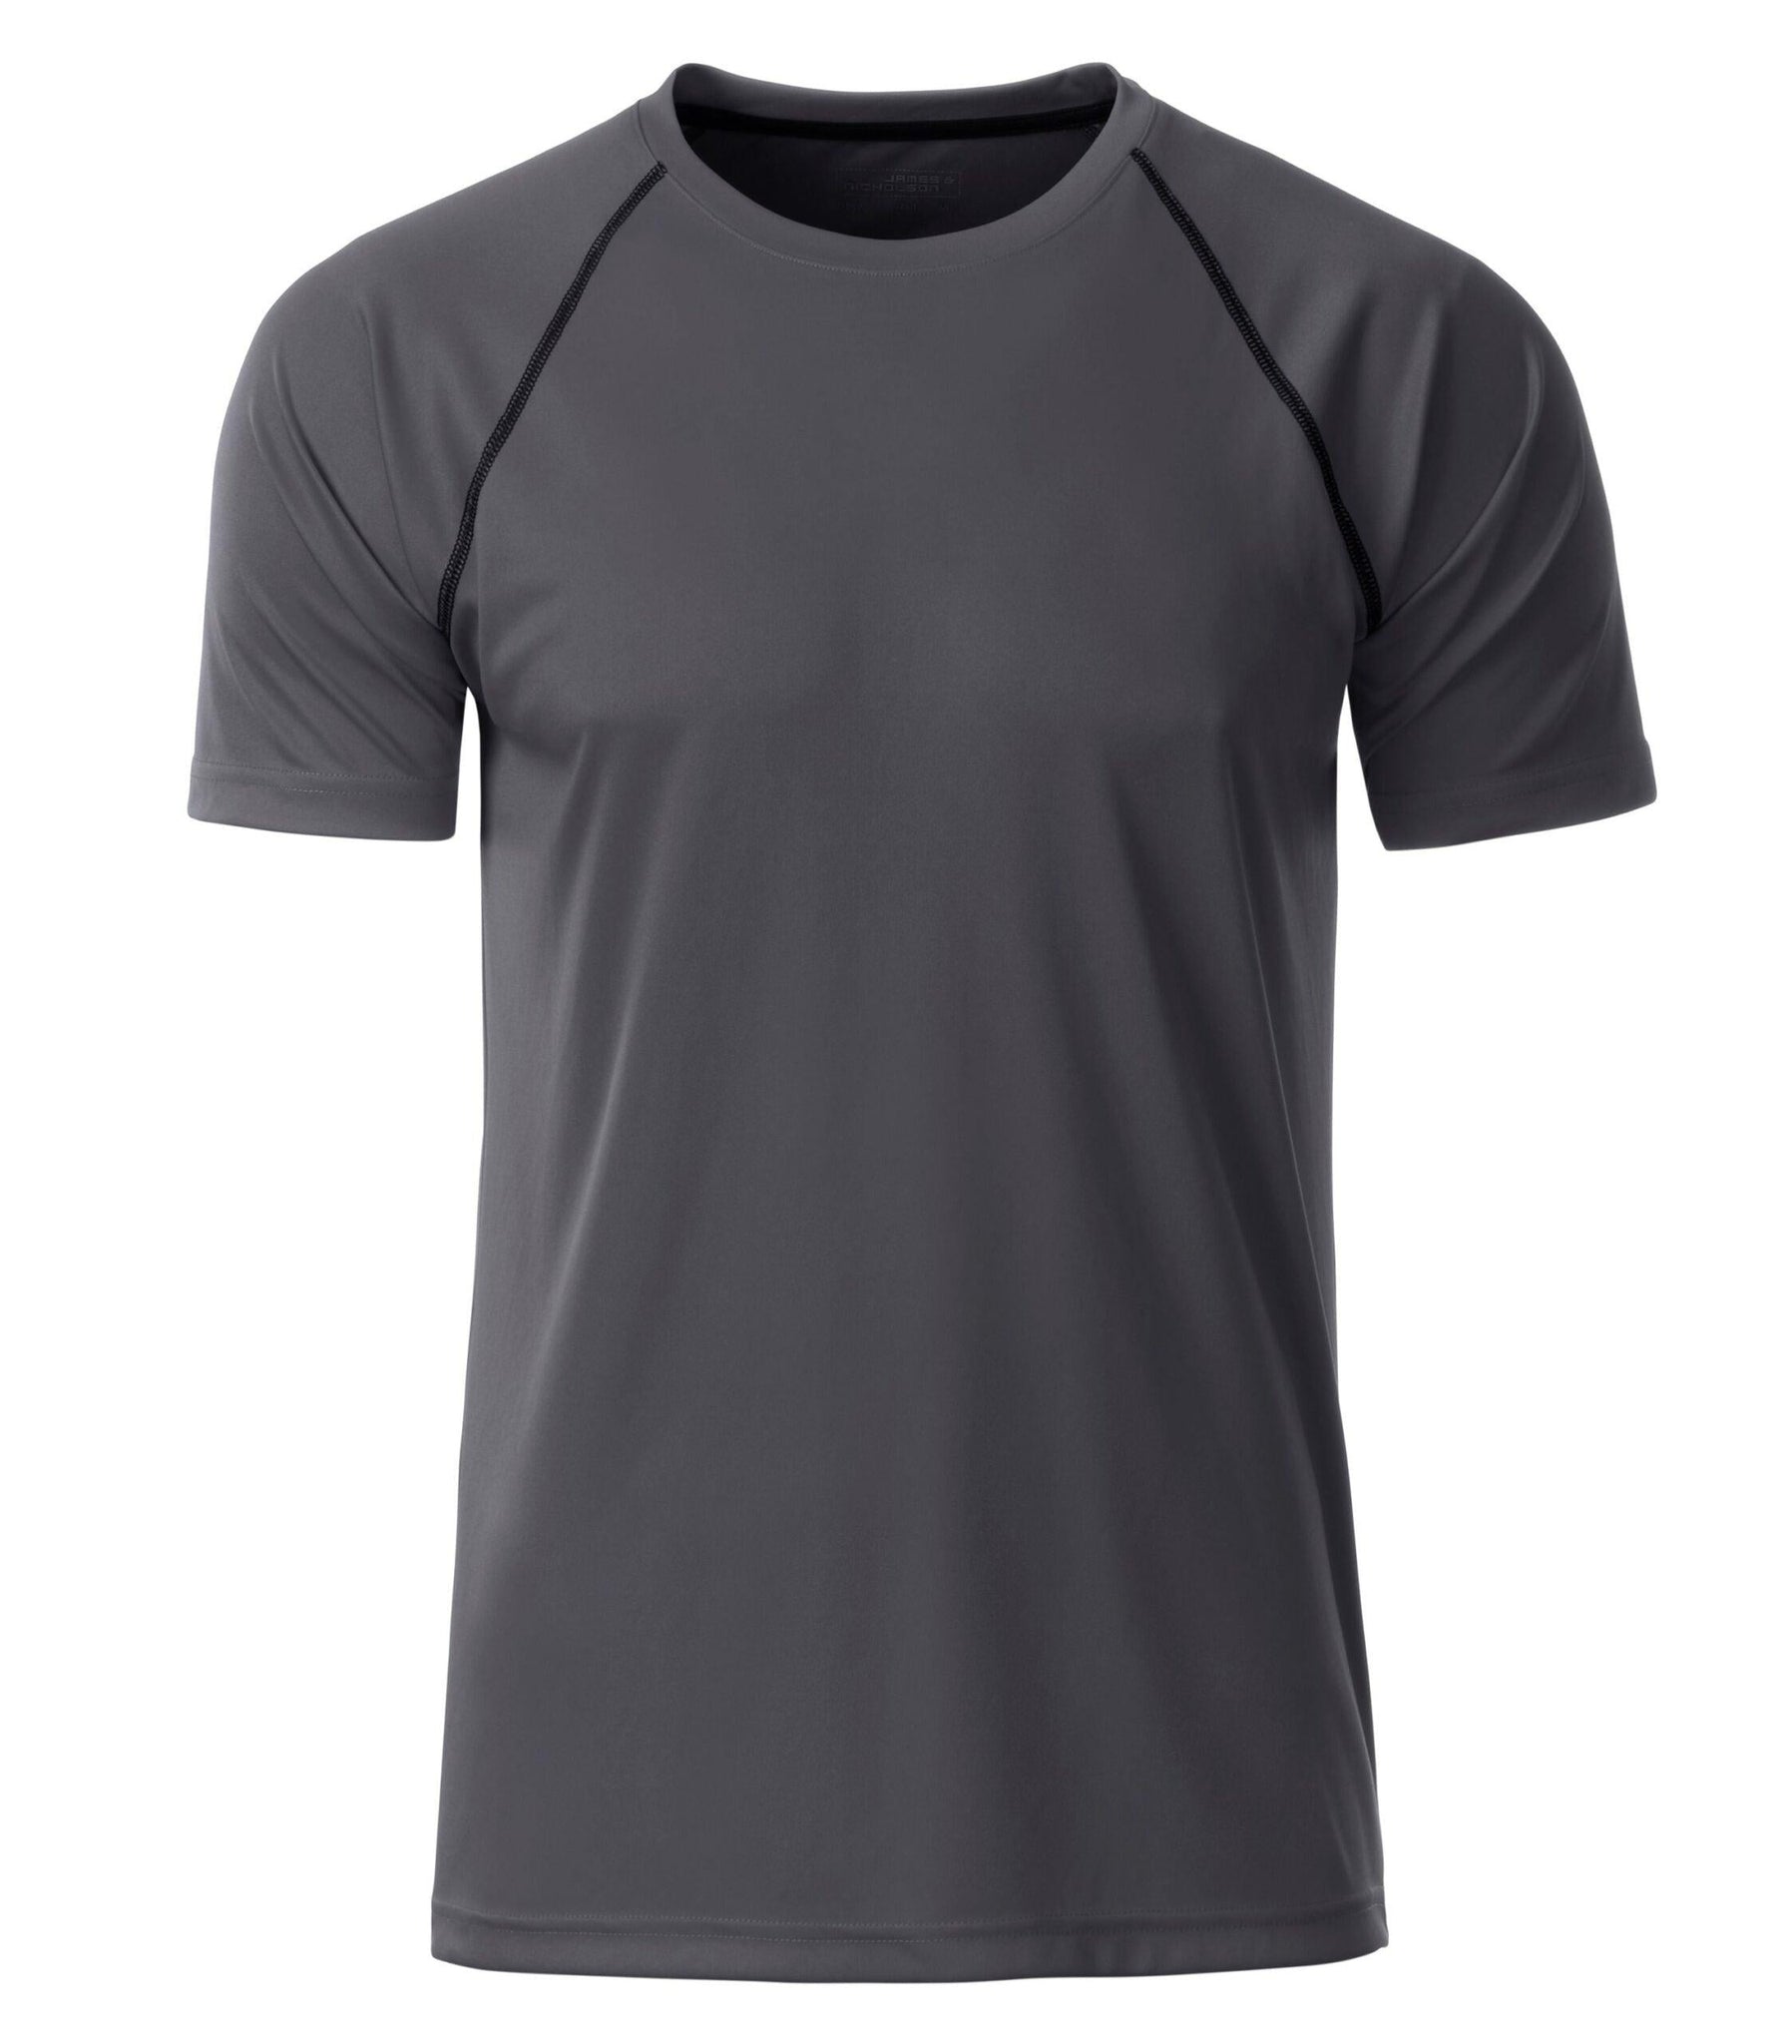 J&N HERRE SPORTS TEE - Fitness T-Shirt - JA Profil 